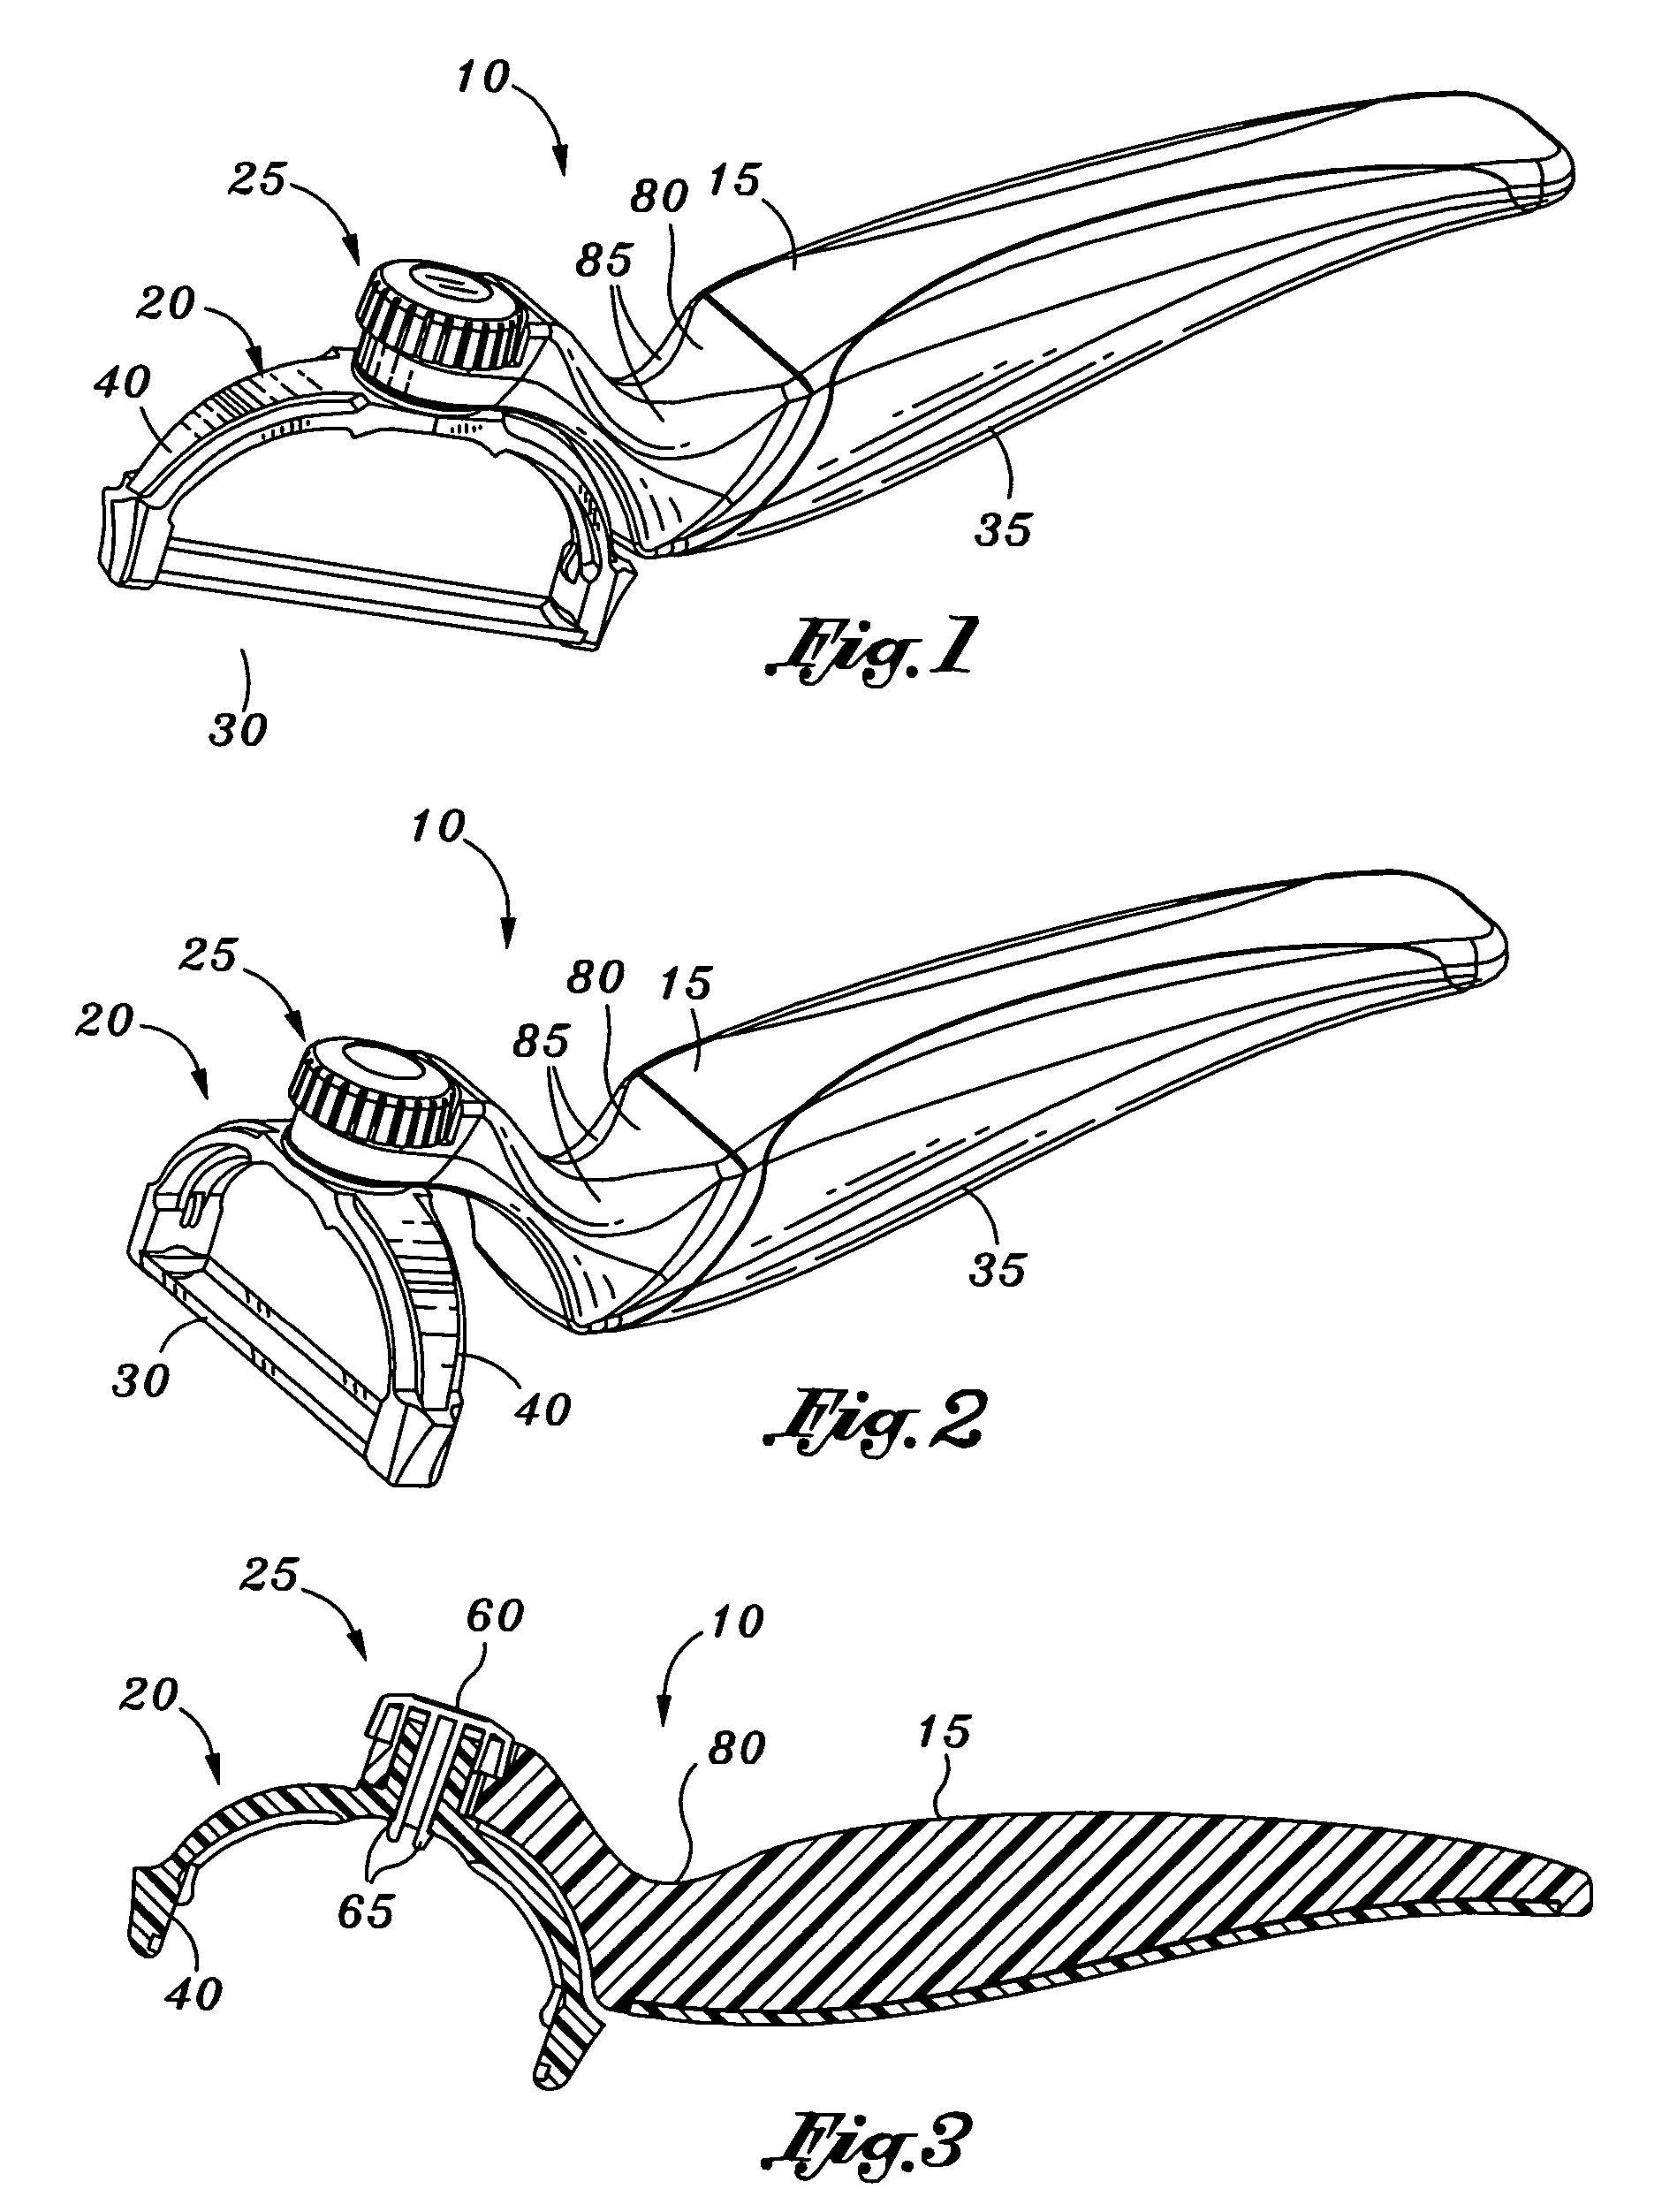 Multi-position peeler apparatus